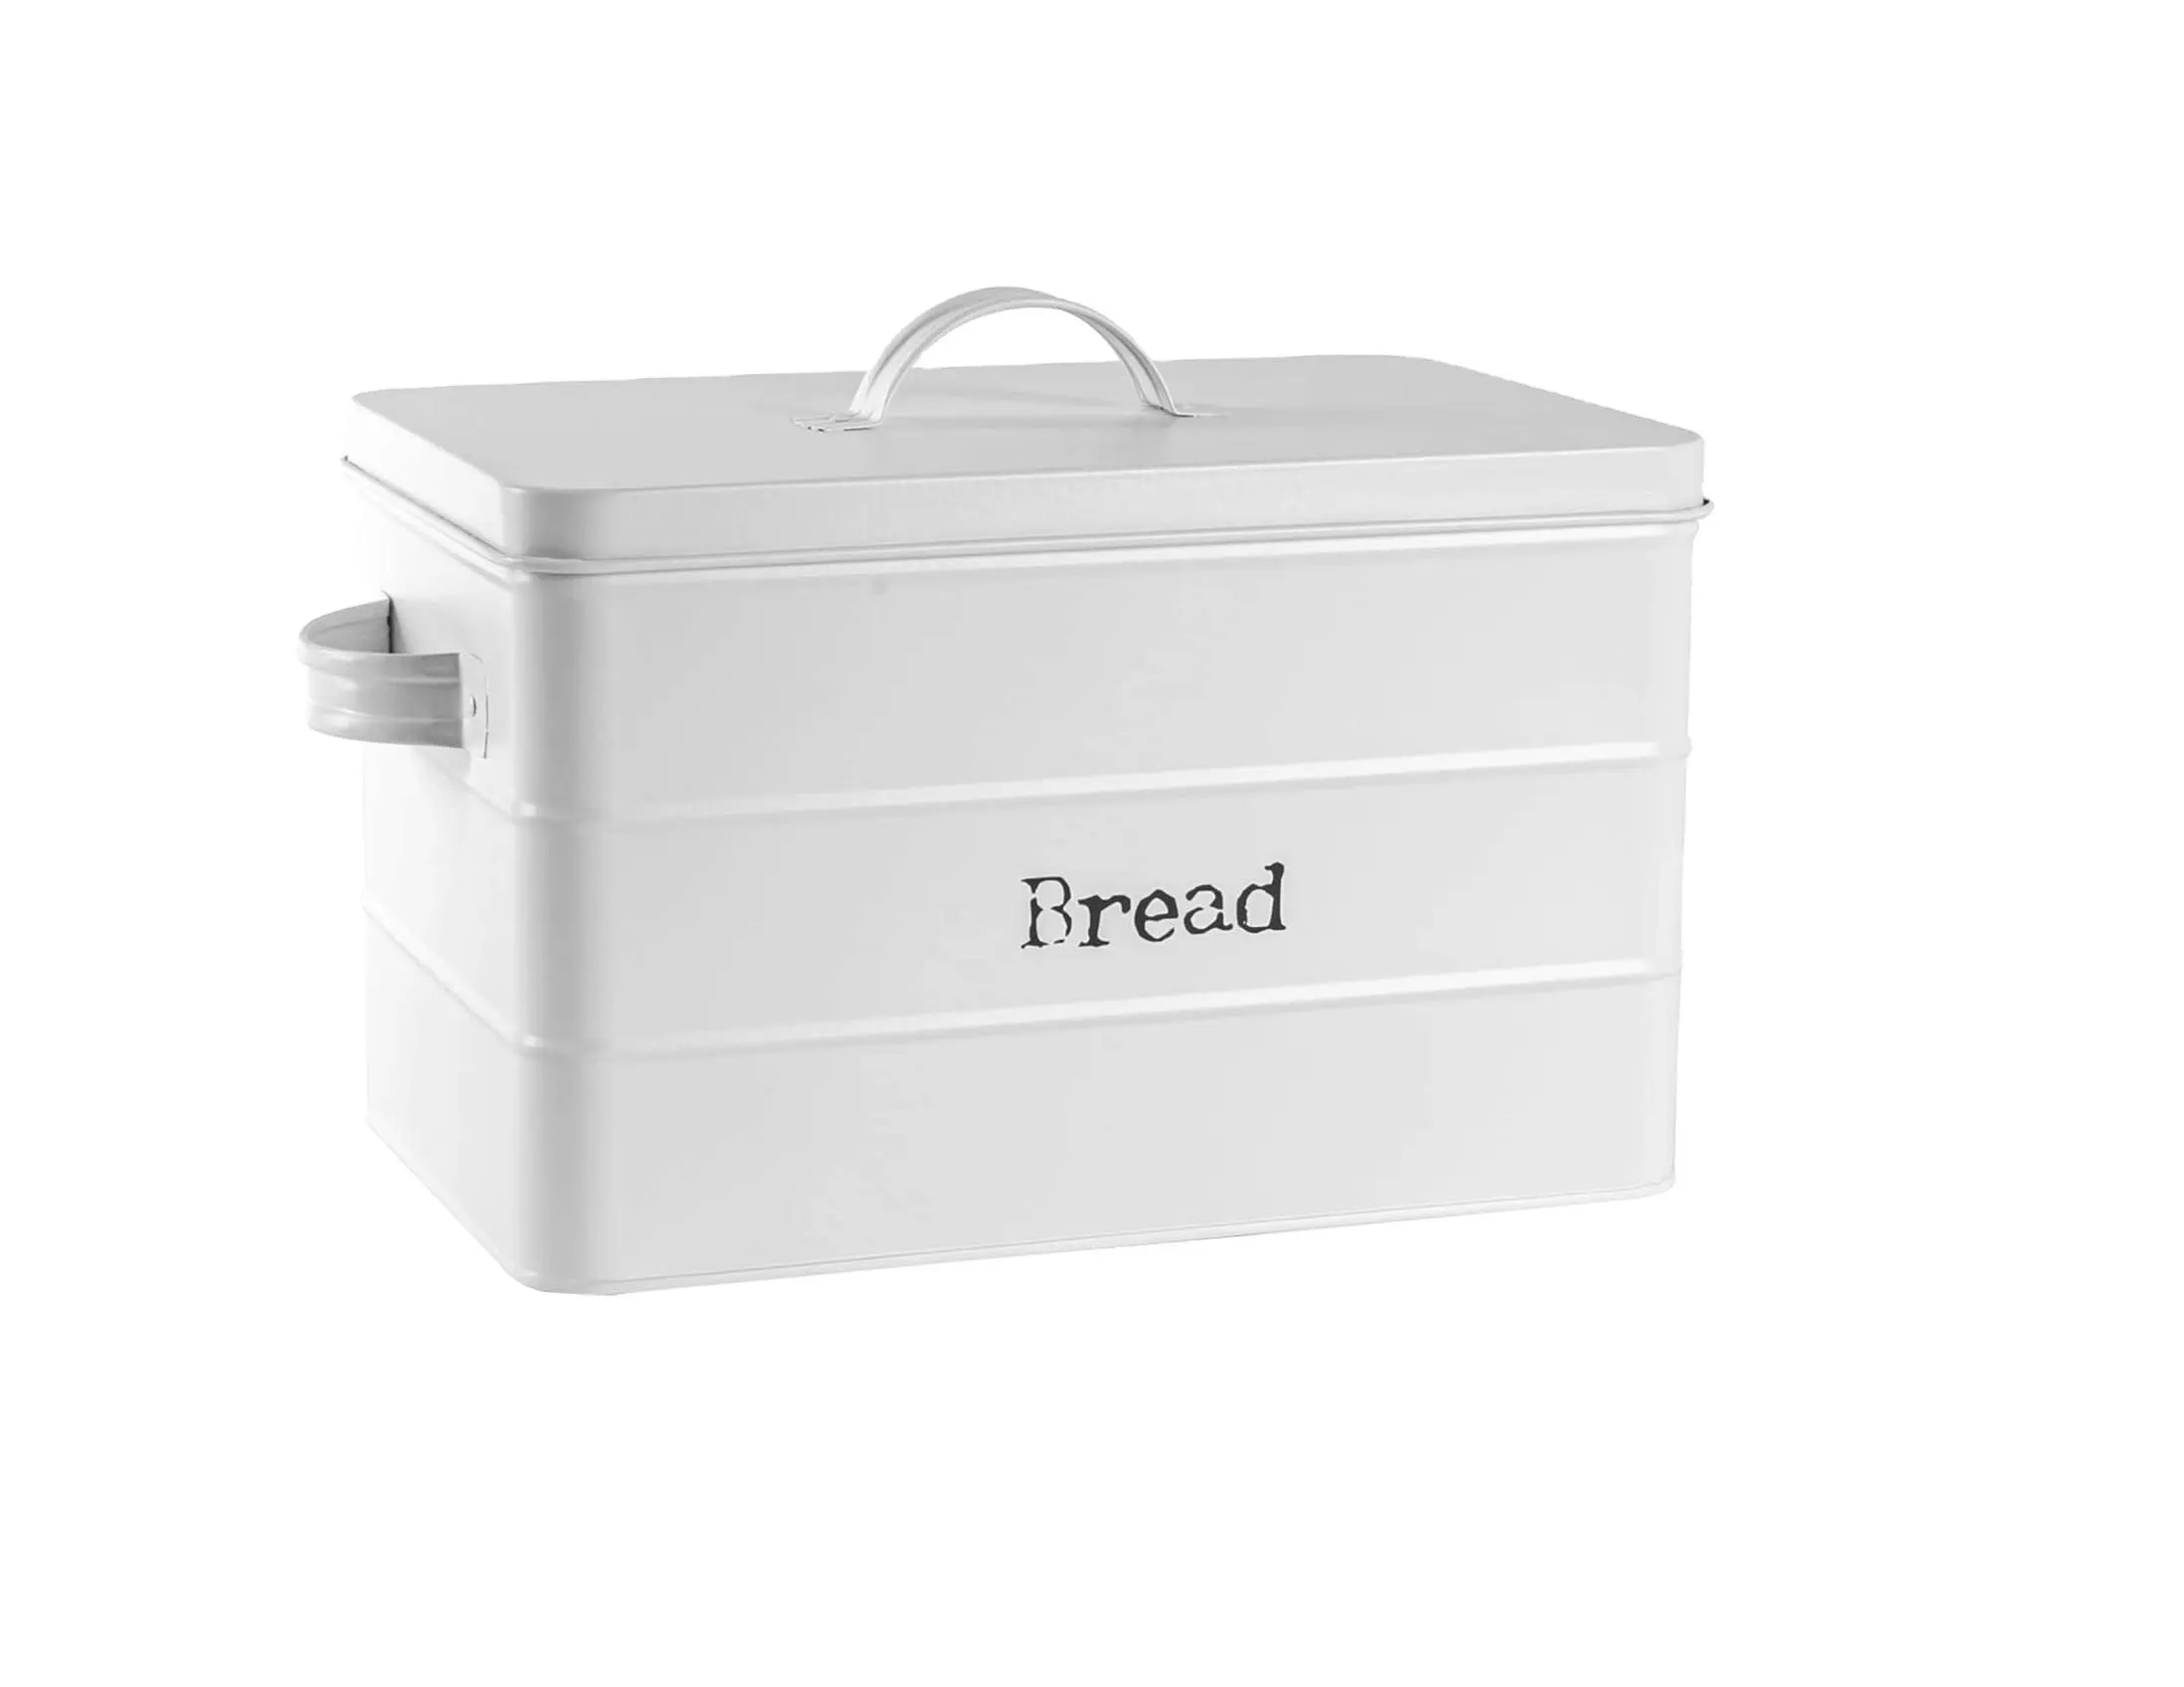 Yeni son tasarım sıcak satış METAL saklama kutusu için kişisel kullanılan el yapımı saklama kutusu toptan fiyat ST